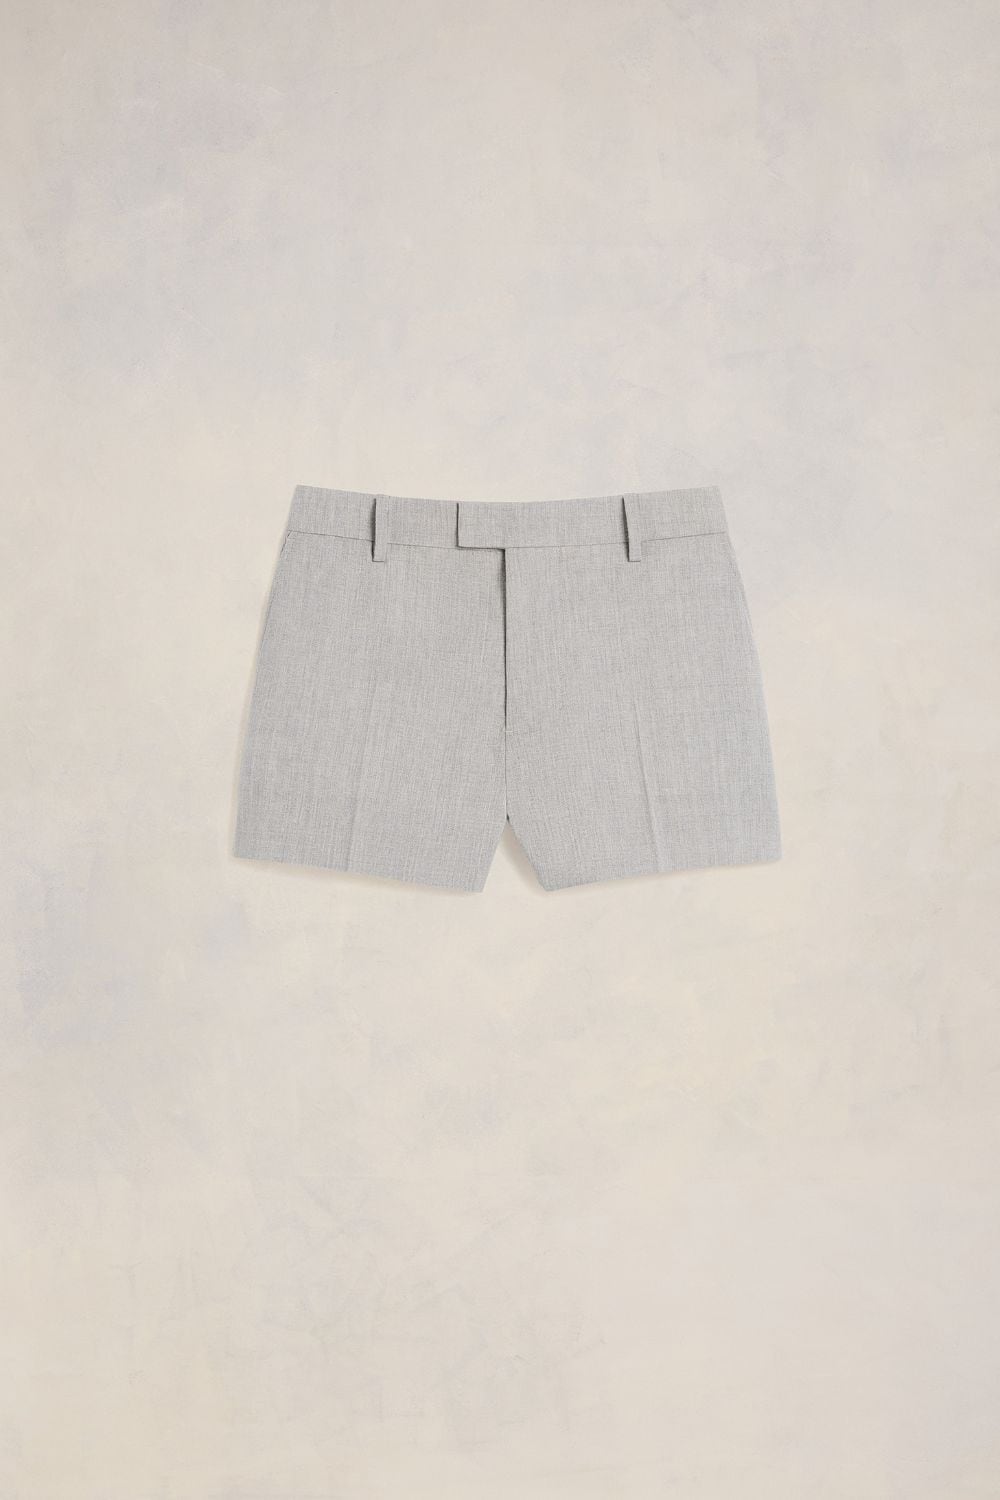 Ami Alexandre Mattiussi Mini Shorts Grey For Men In Gray